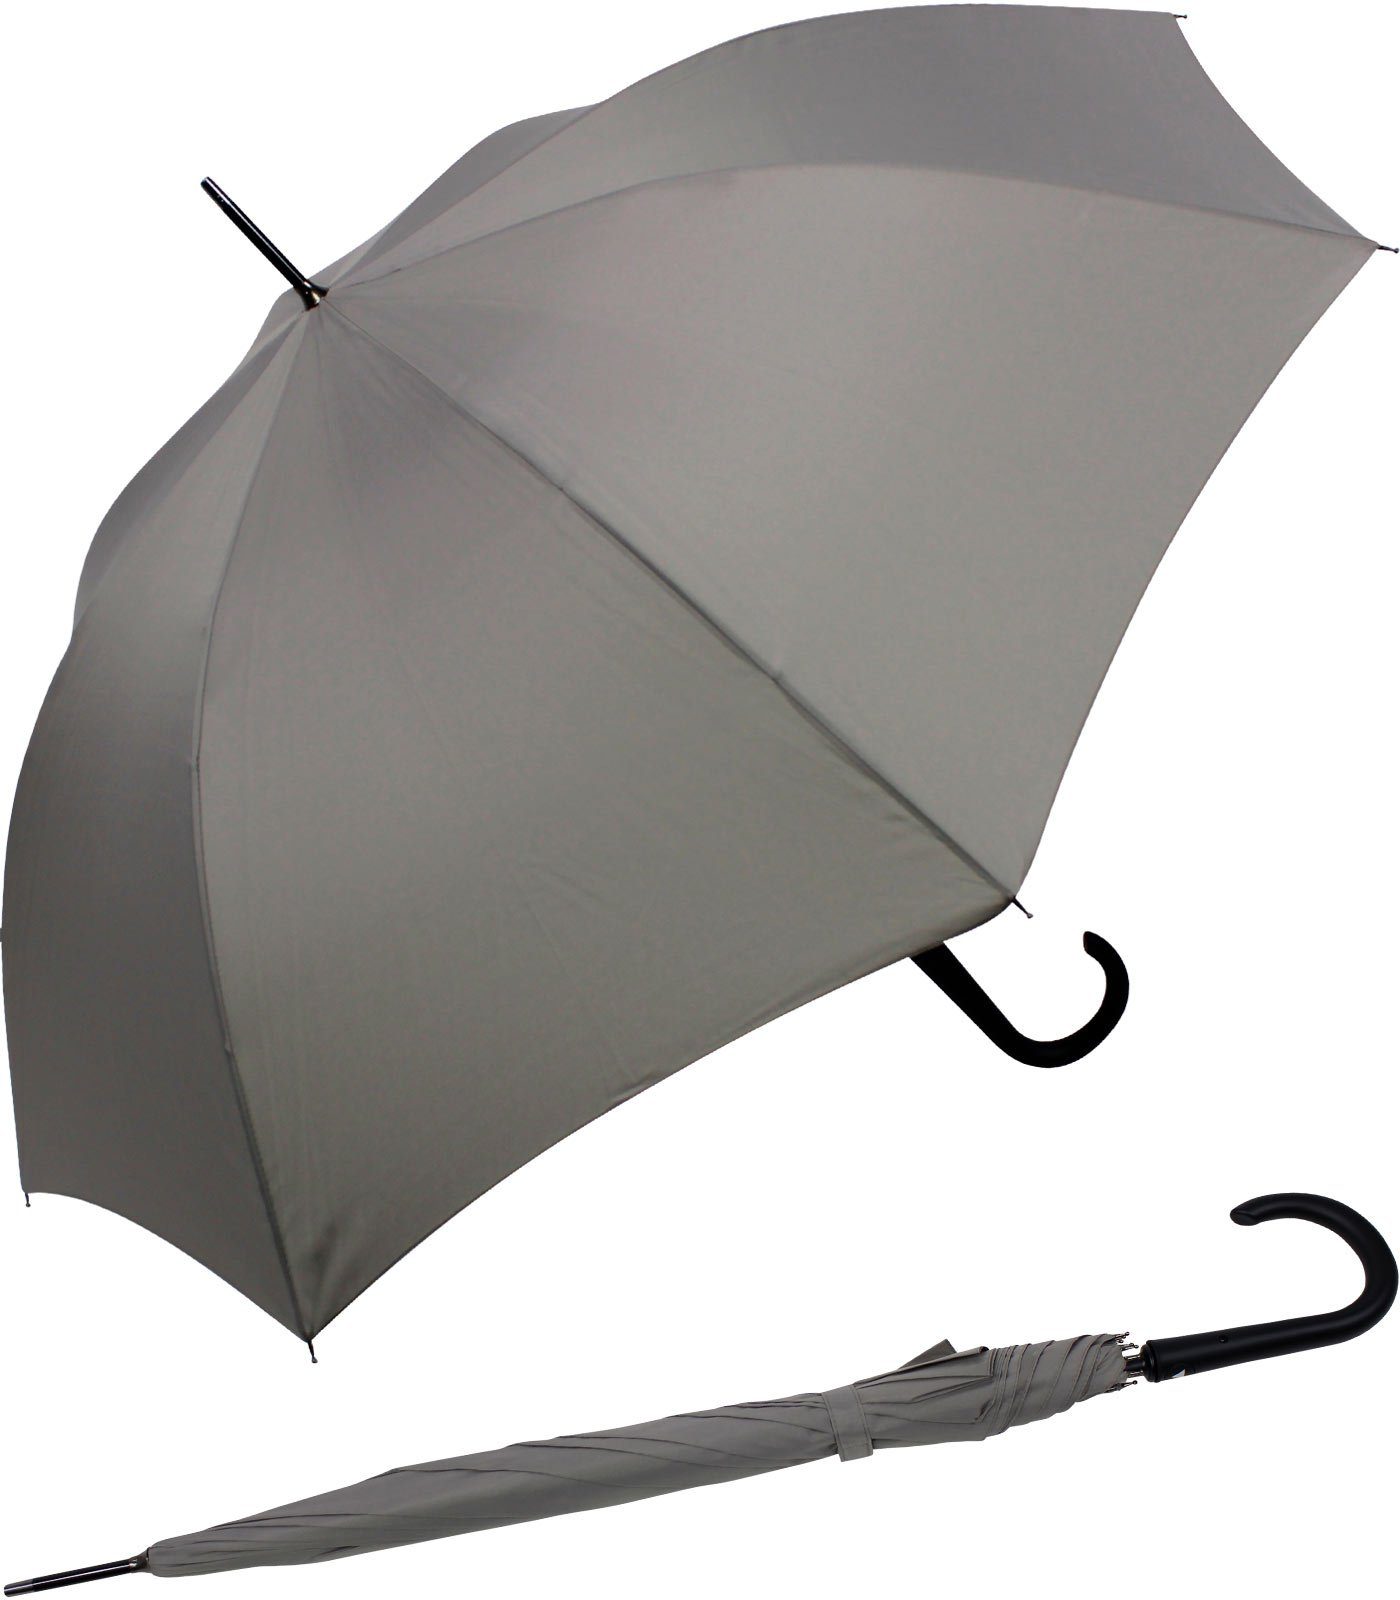 RS-Versand Langregenschirm stabiler Stahl-Fiberglas-Gestell, großer Auslöseknopf Regenschirm grau mit Auf-Automatik, integrierter